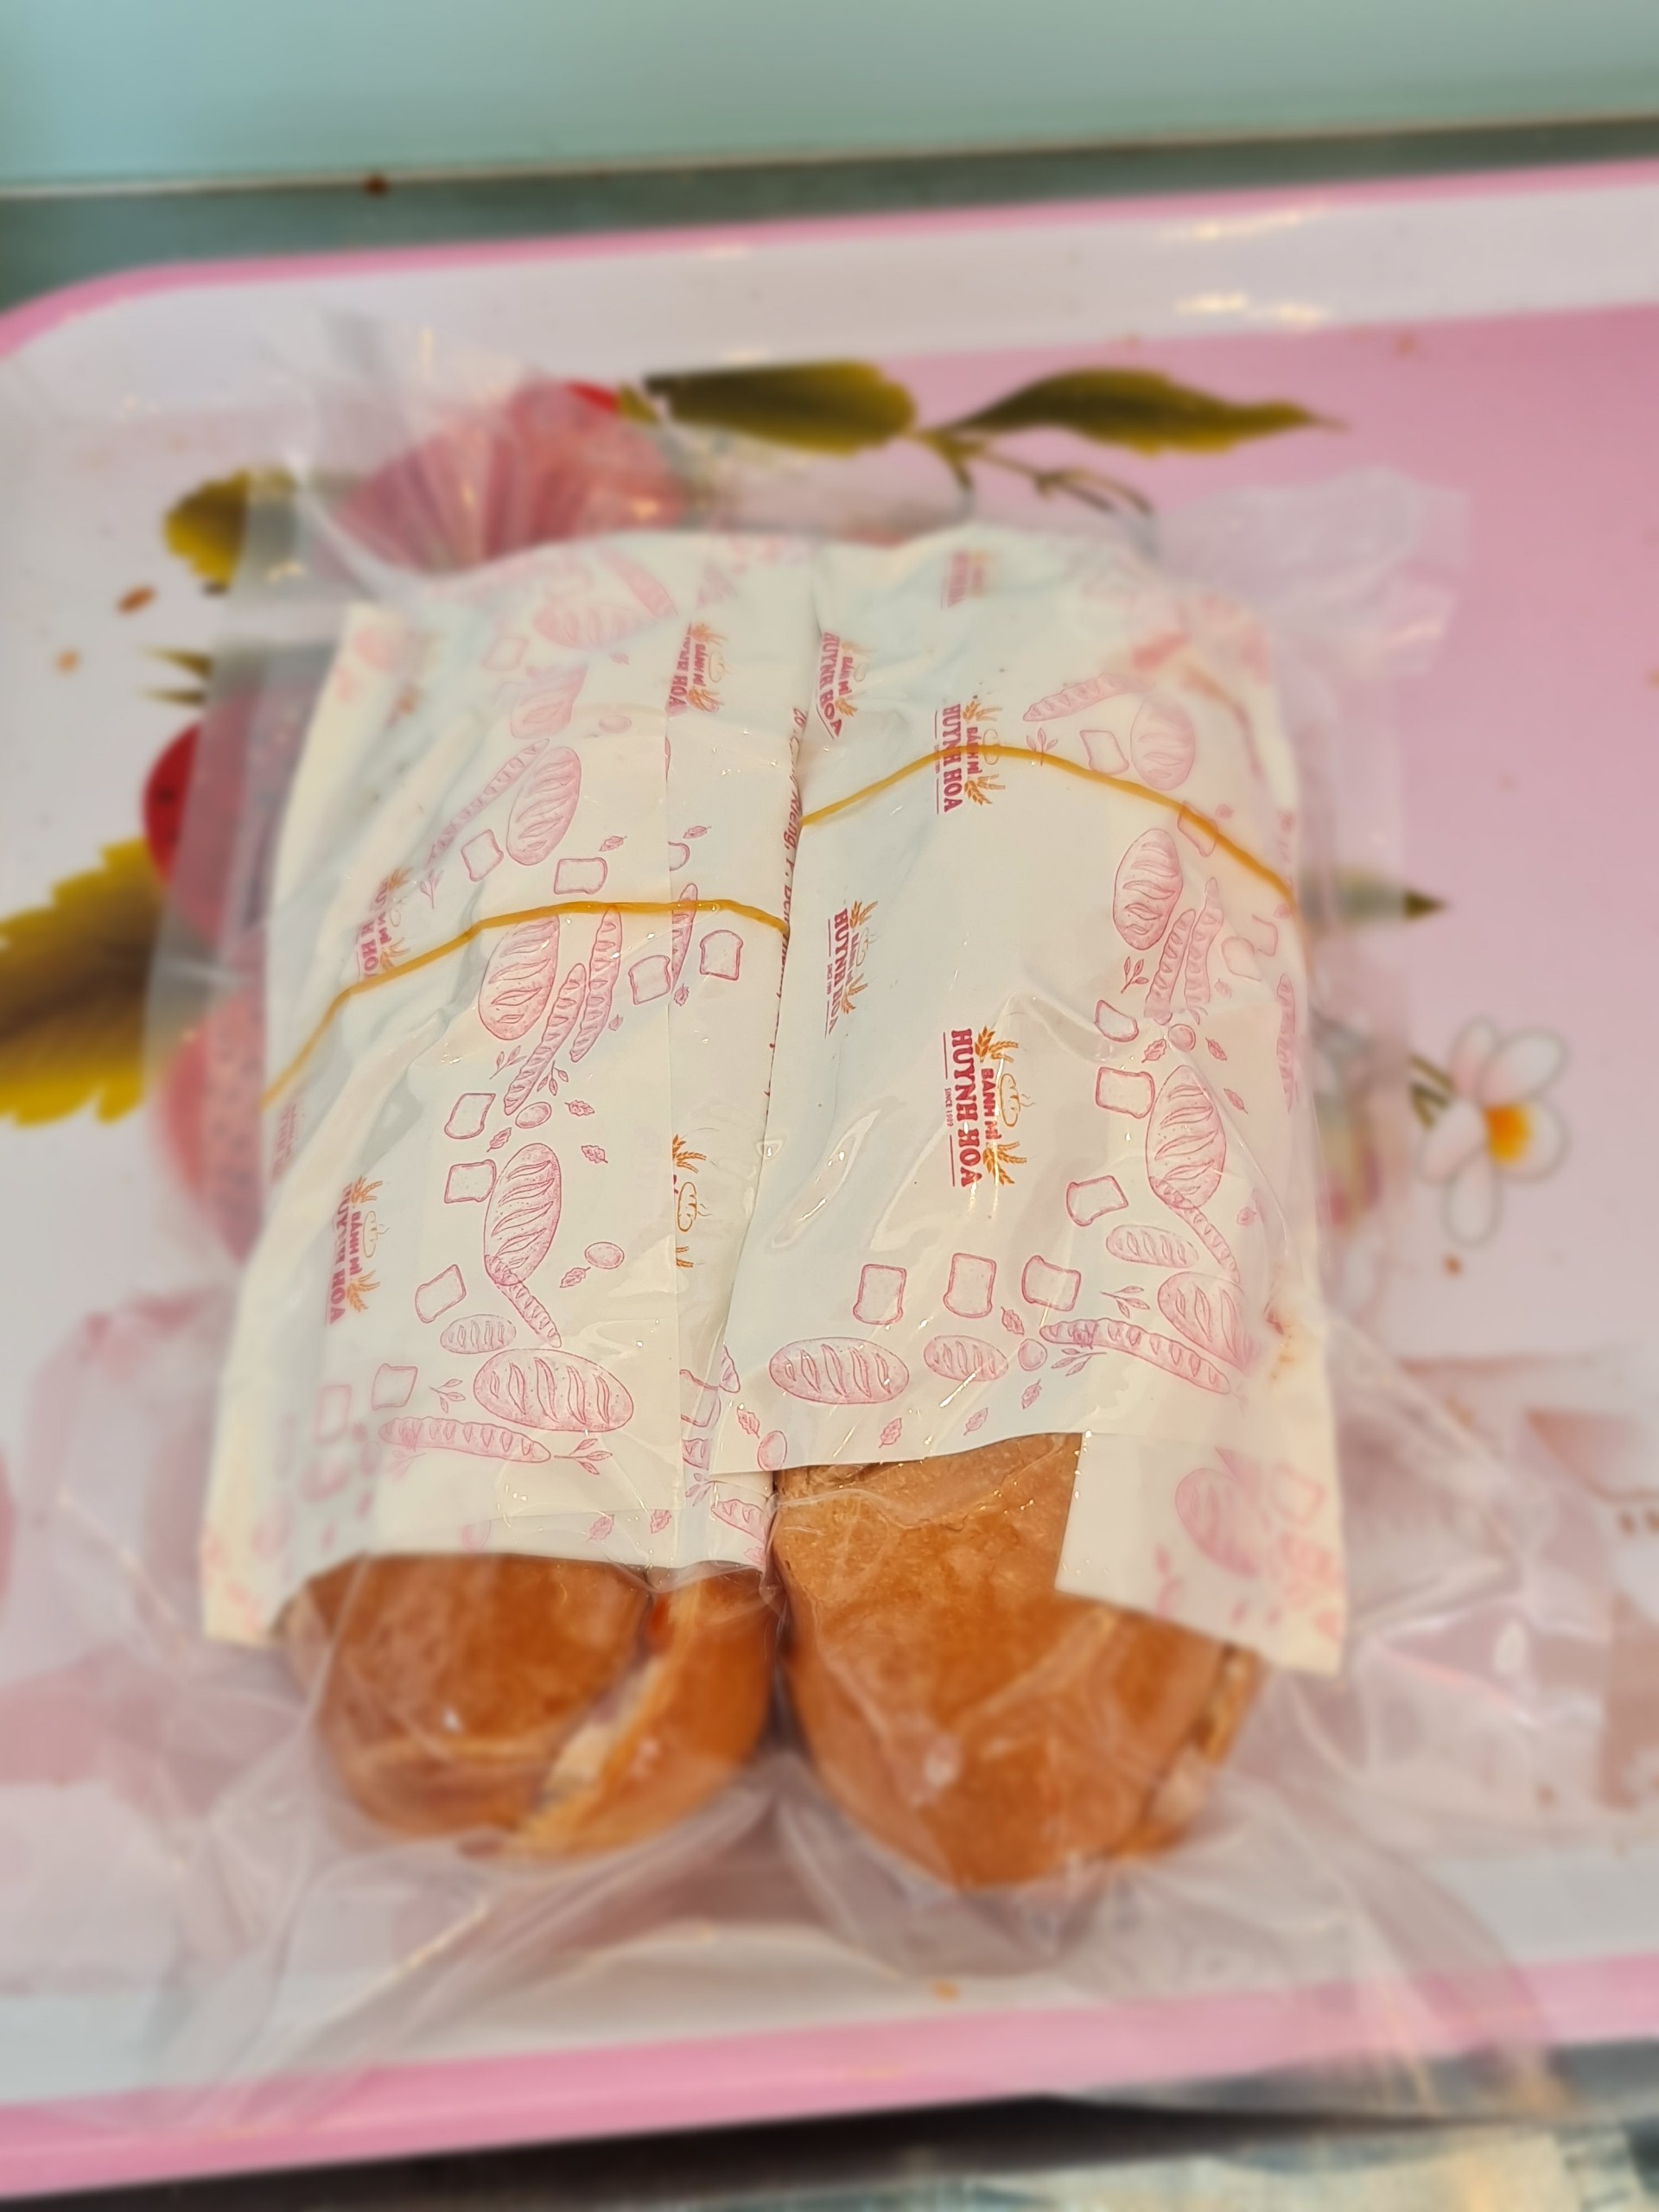 Bánh mì nổi tiếng Sài Gòn ship máy bay ra Hà Nội, giá 100 ngàn/chiếc, thực khách vẫn chuộng - Ảnh 1.